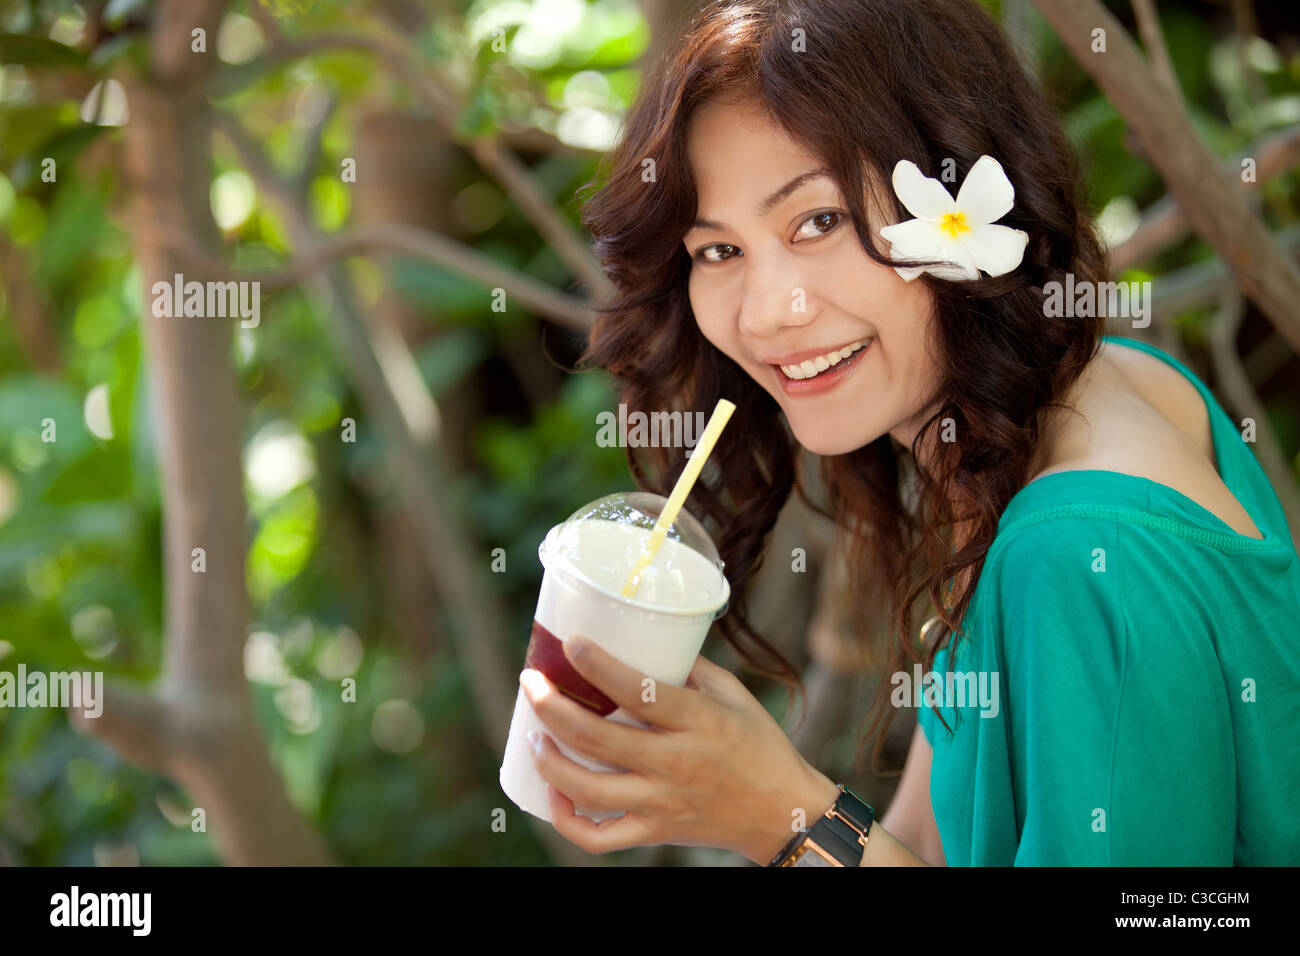 Smiling asian femme thaïlandaise de boire du jus de fruits avec une fleur dans les cheveux Banque D'Images